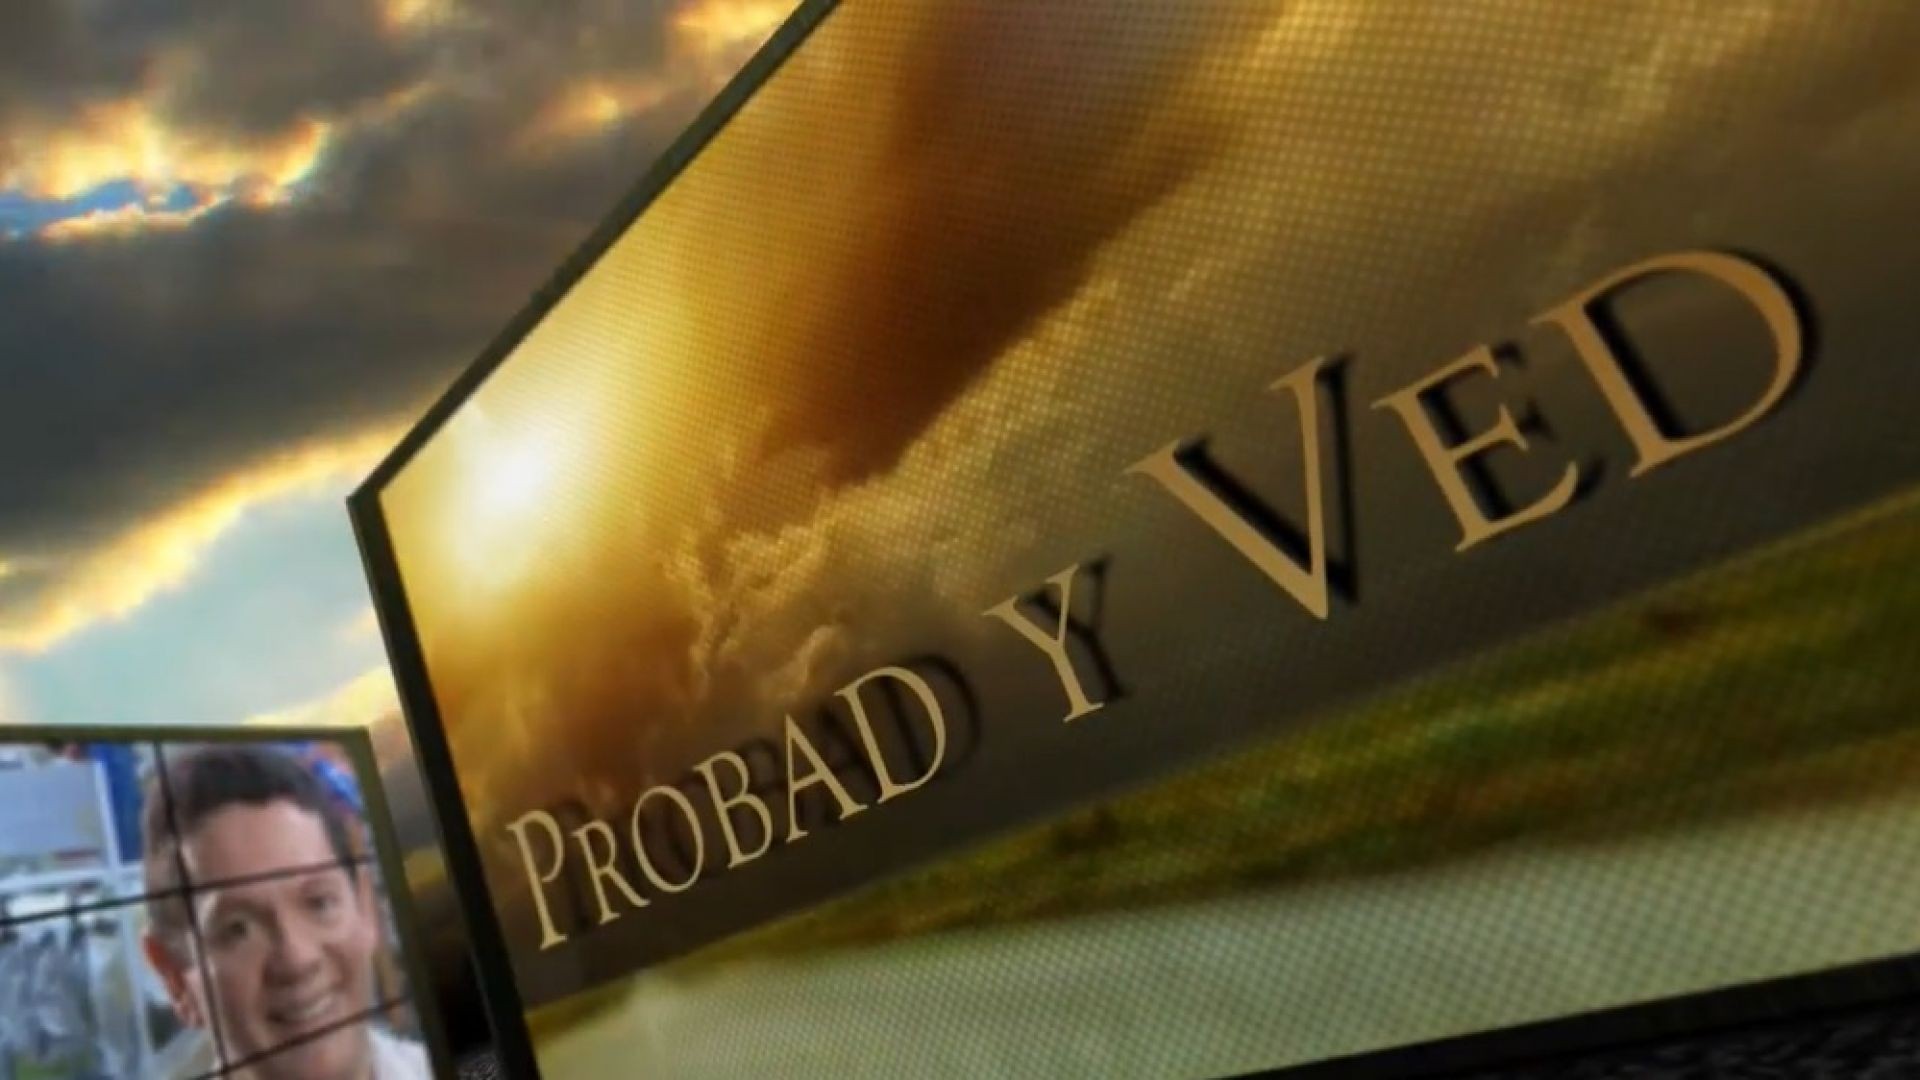 Probad y Ved 2013 - Fidelidad anticipada - 03/Ago